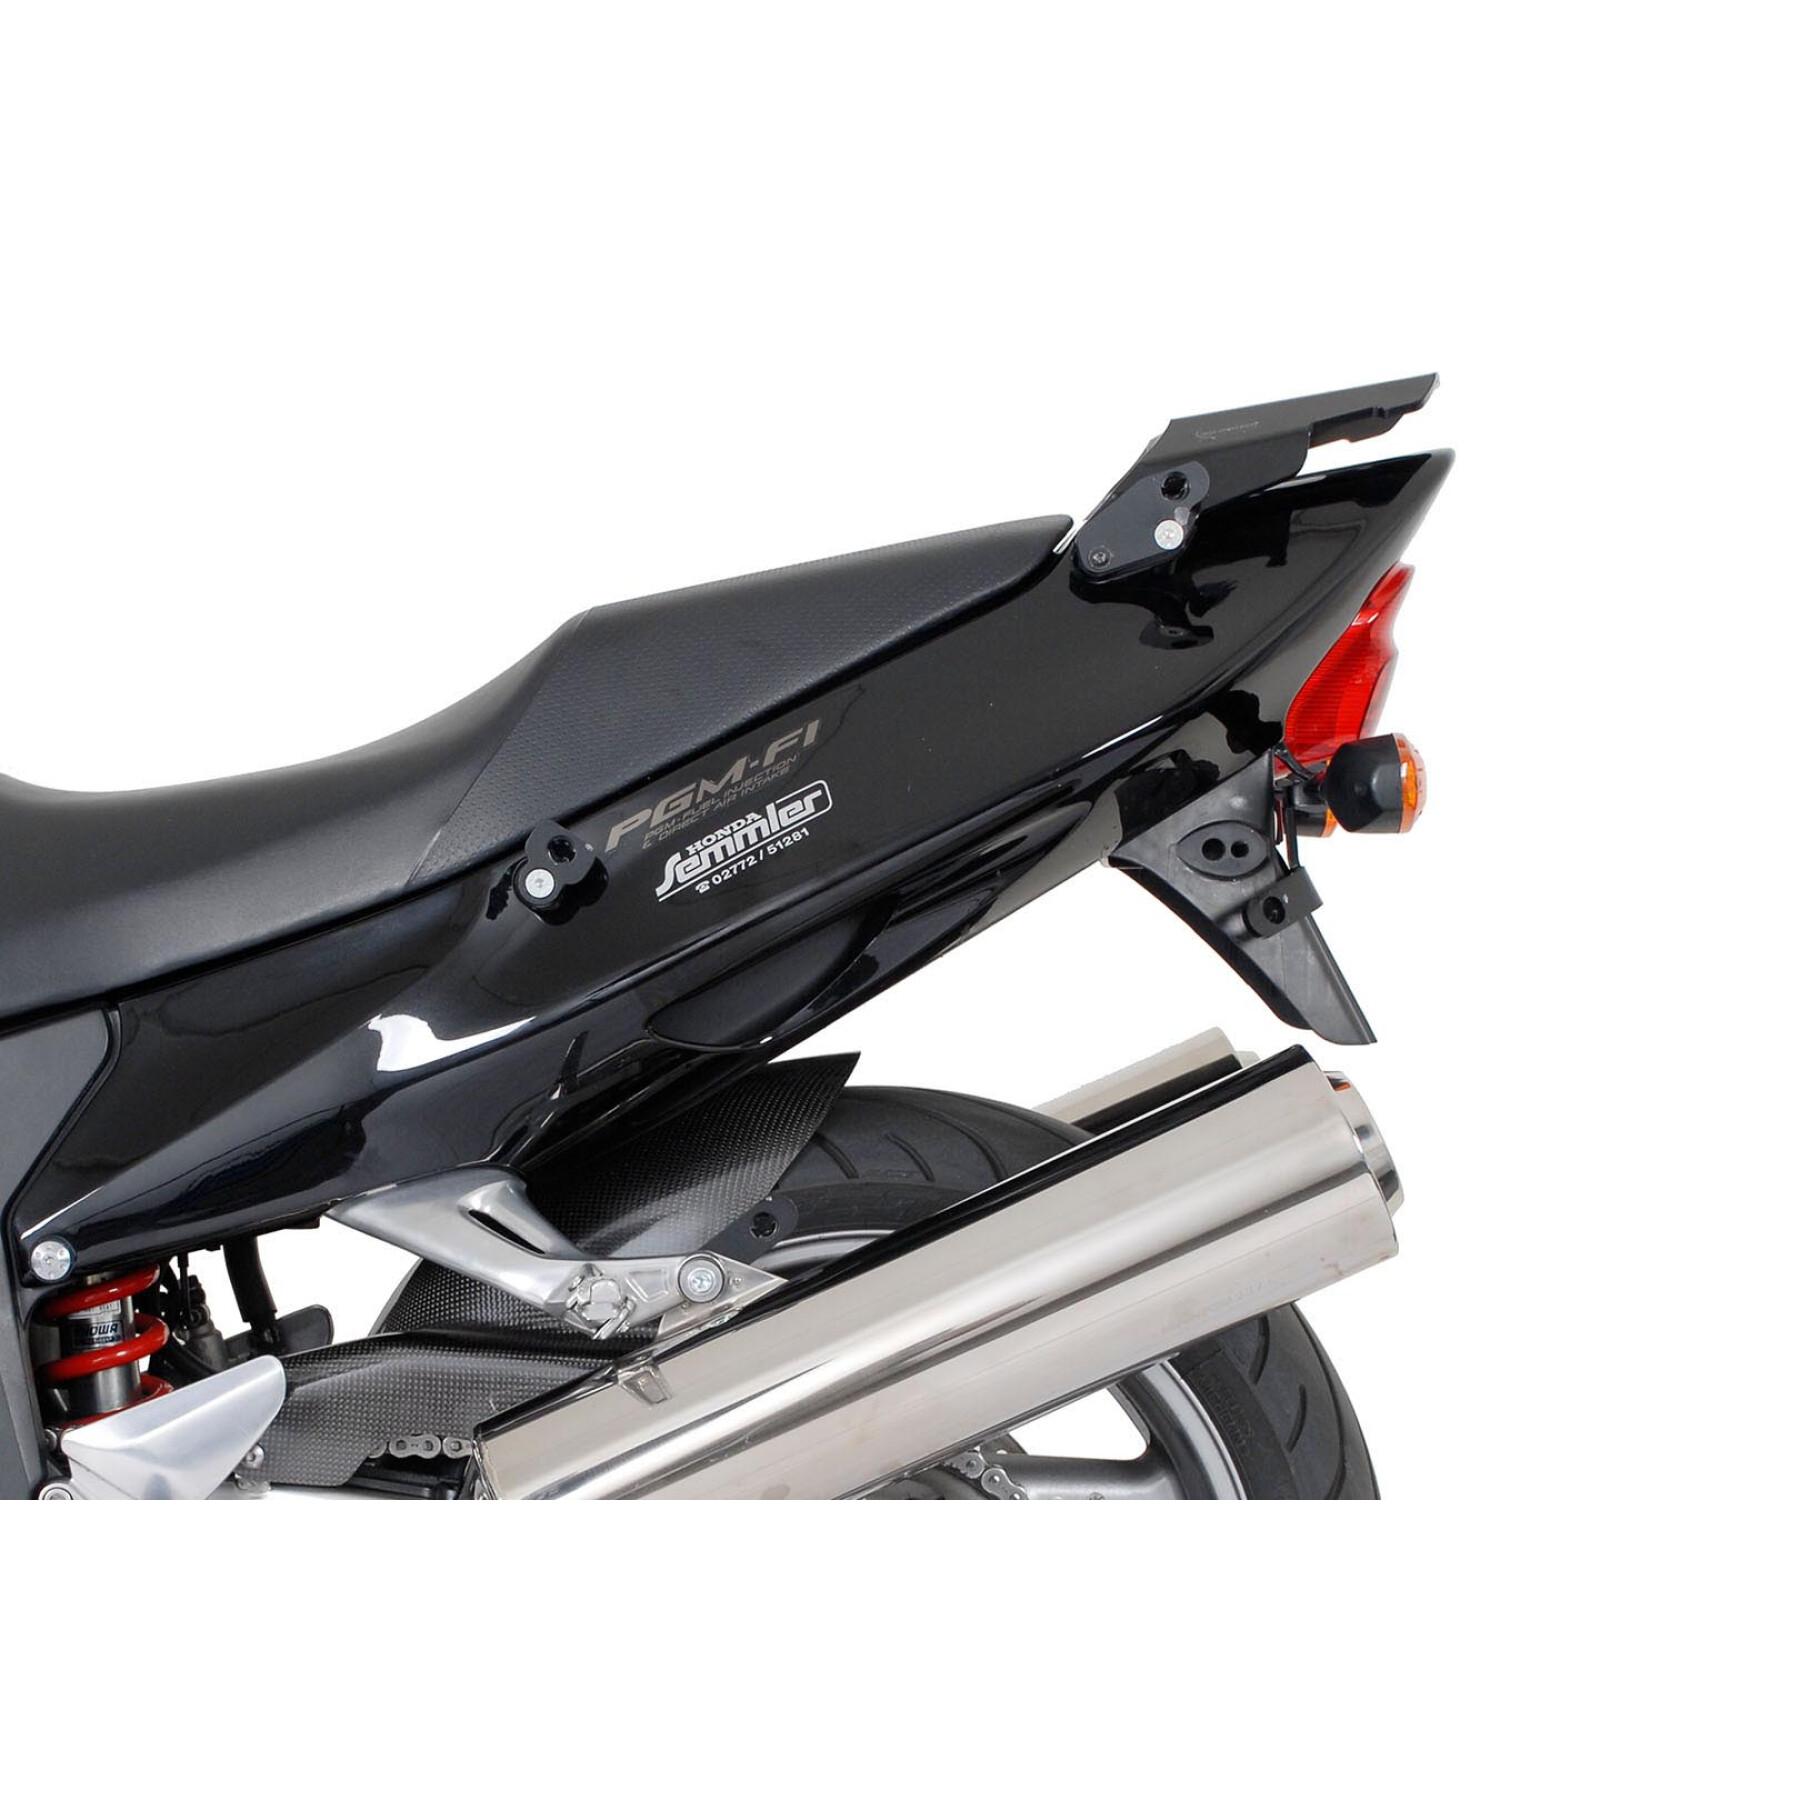 Wspornik kufra bocznego motocykla Sw-Motech Evo. Honda Cbr 1100 Xx Blackrbird (99-07)